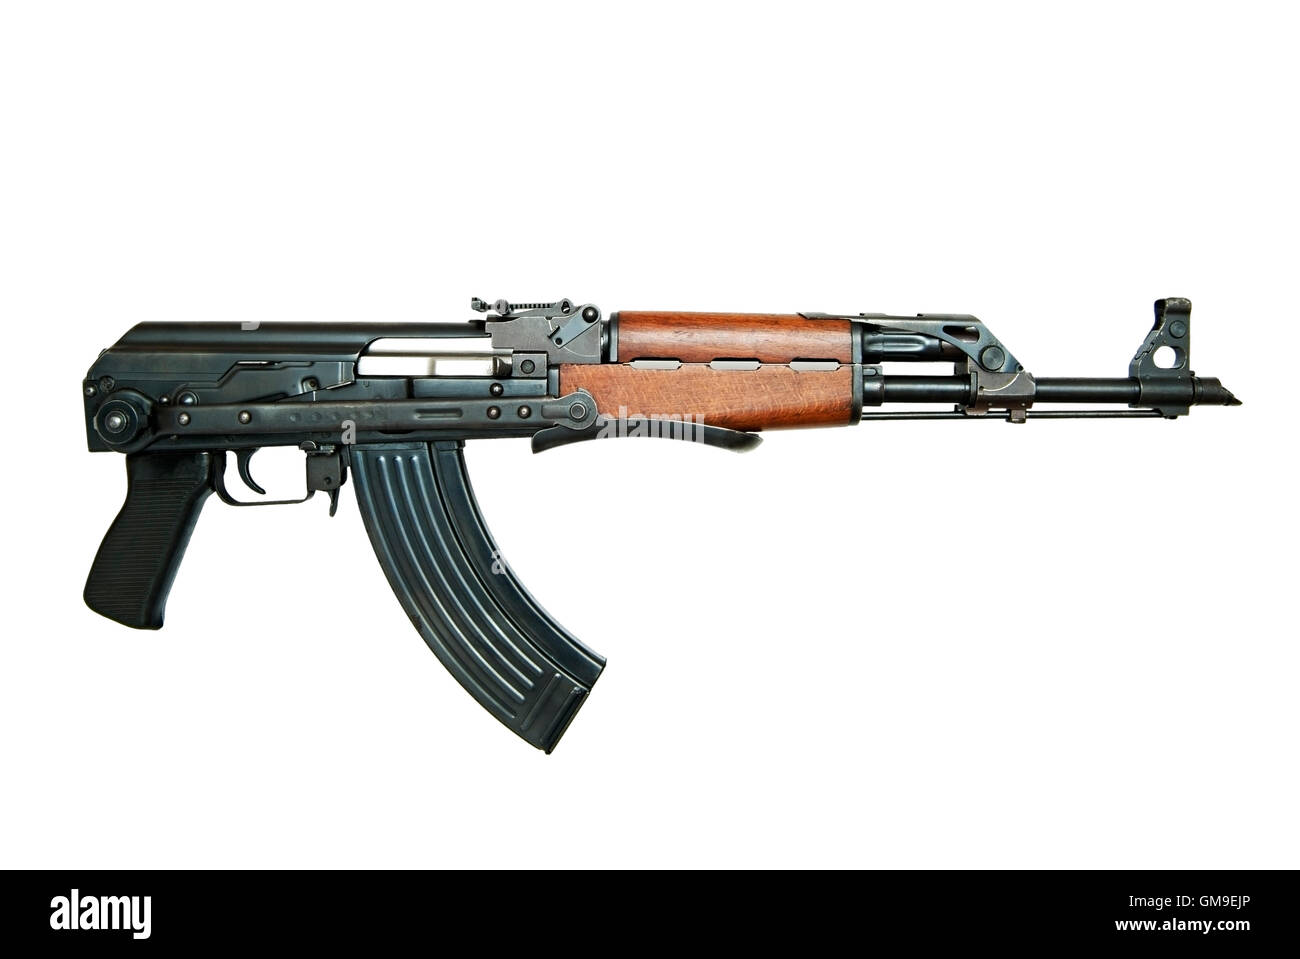 AK47 AKMS Kalashnikov fucile da assalto, tagliati fuori. Foto Stock